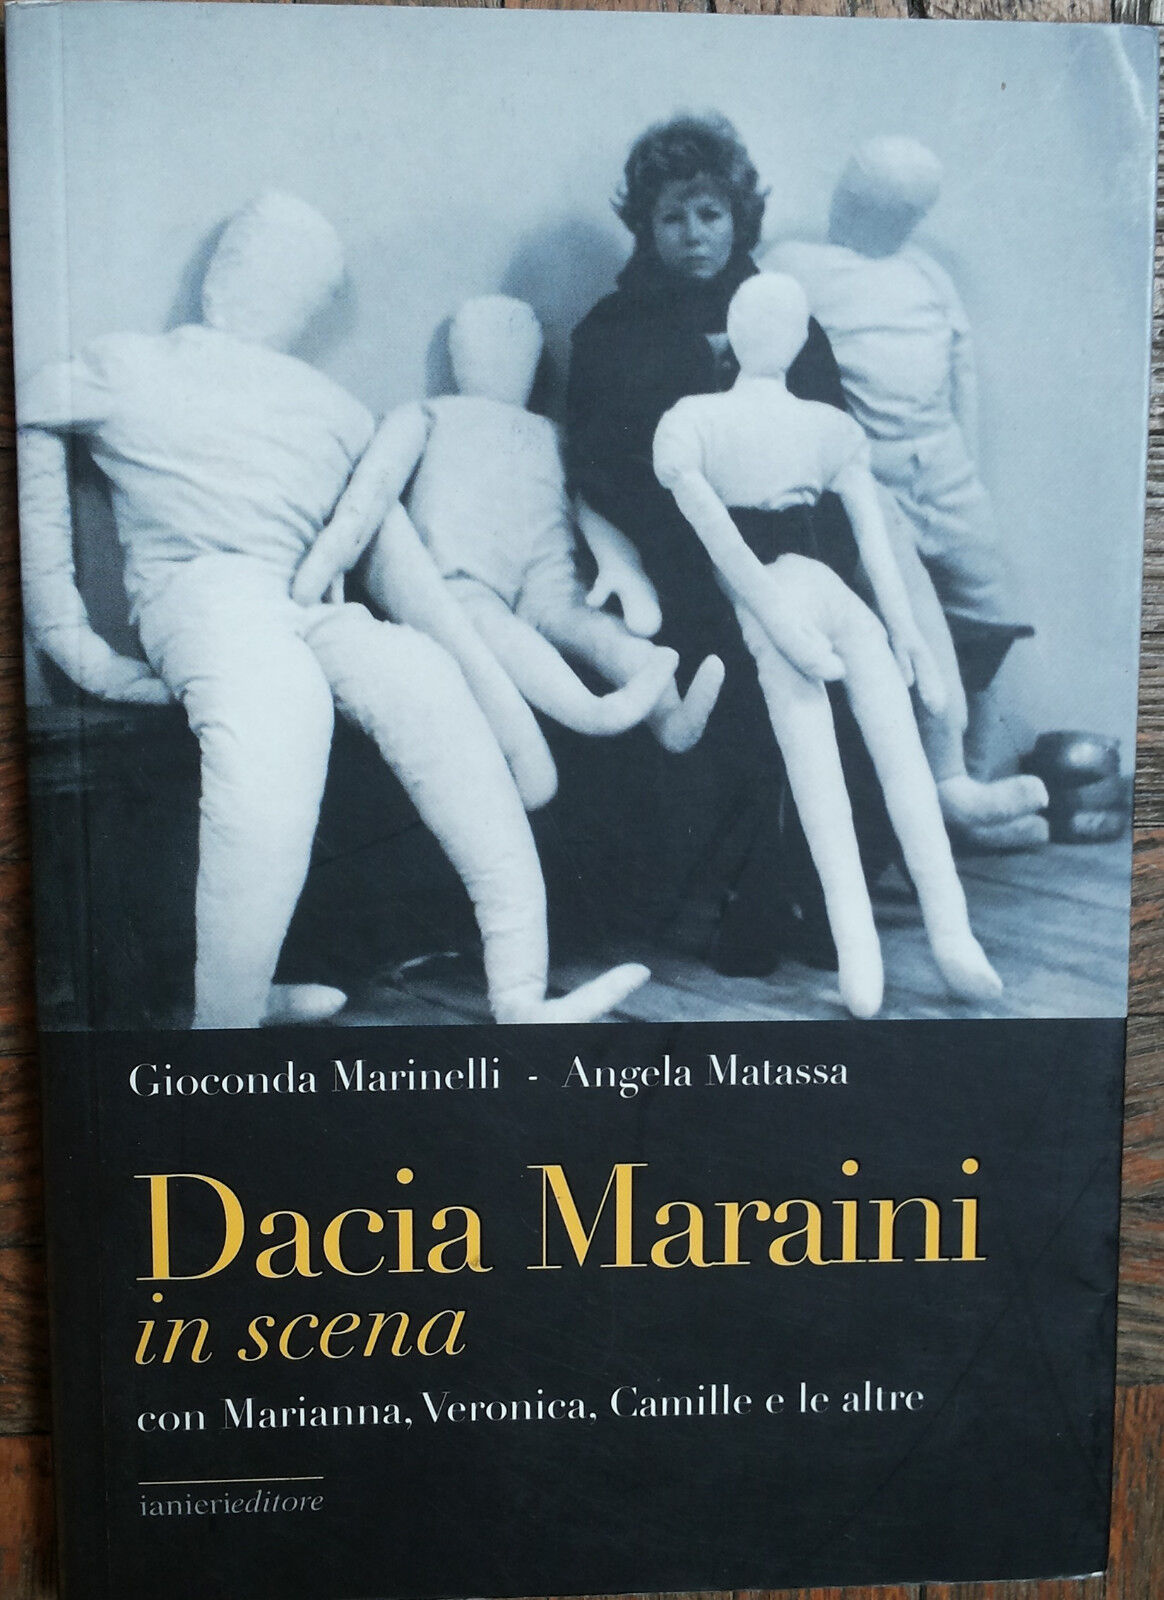 Dacia Maraini in scena -  Marinelli, Matassa - Ianieri editore,2008 - R libro usato